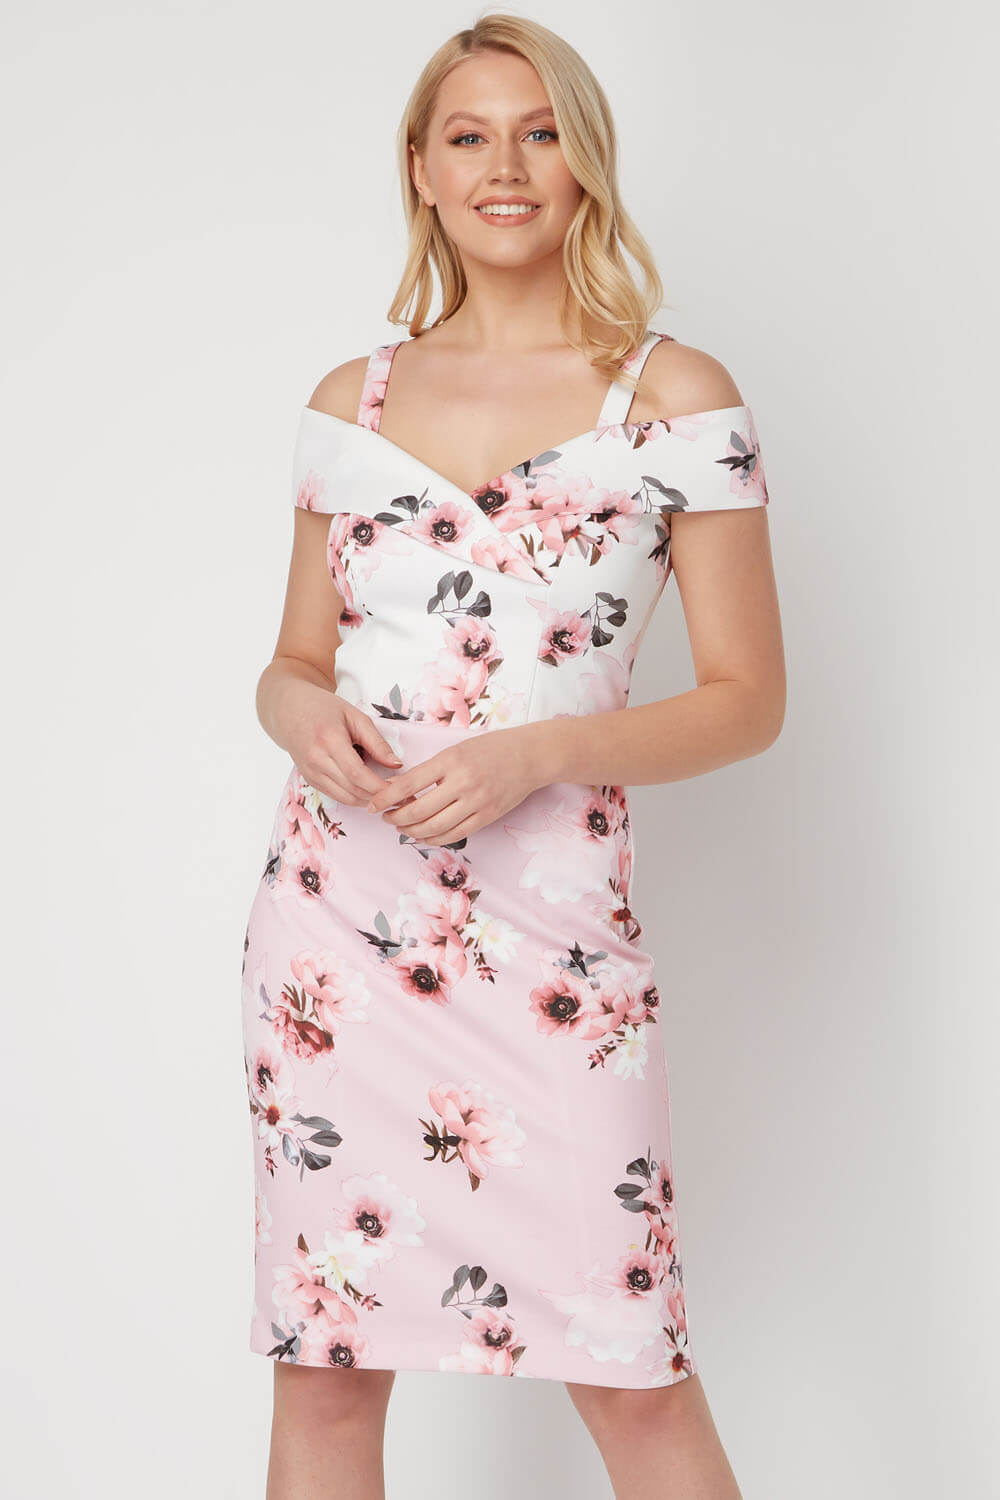 Floral Print Cold Shoulder Dress in Light Pink - Roman Originals UK